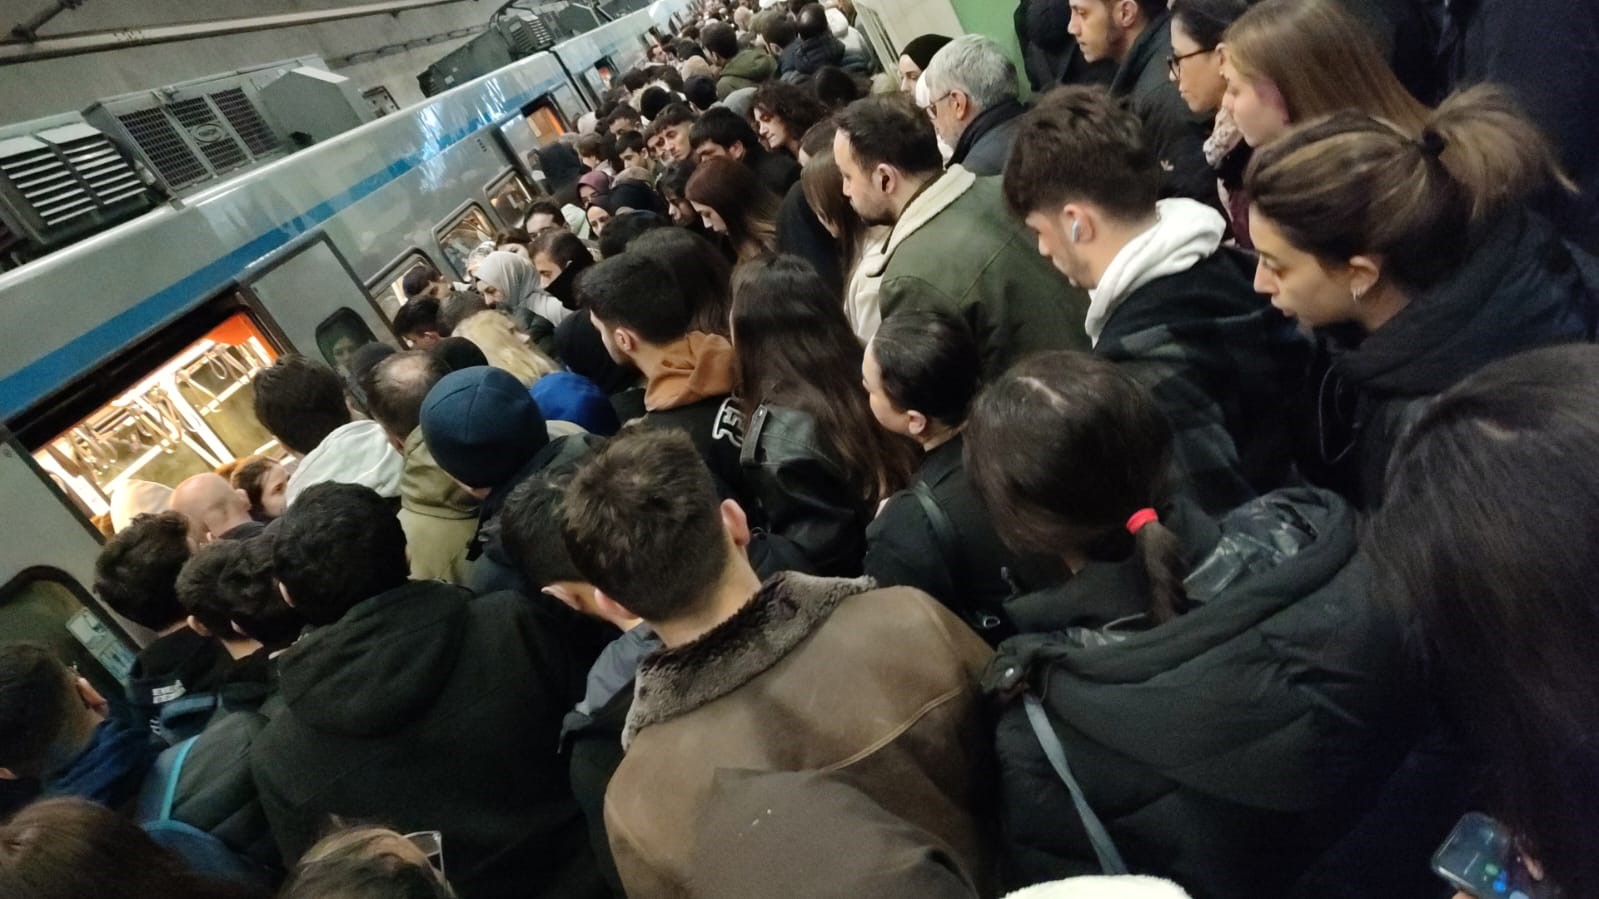 yenikapı-kirazlı metro hattında arıza nedeniyle seferler durdu